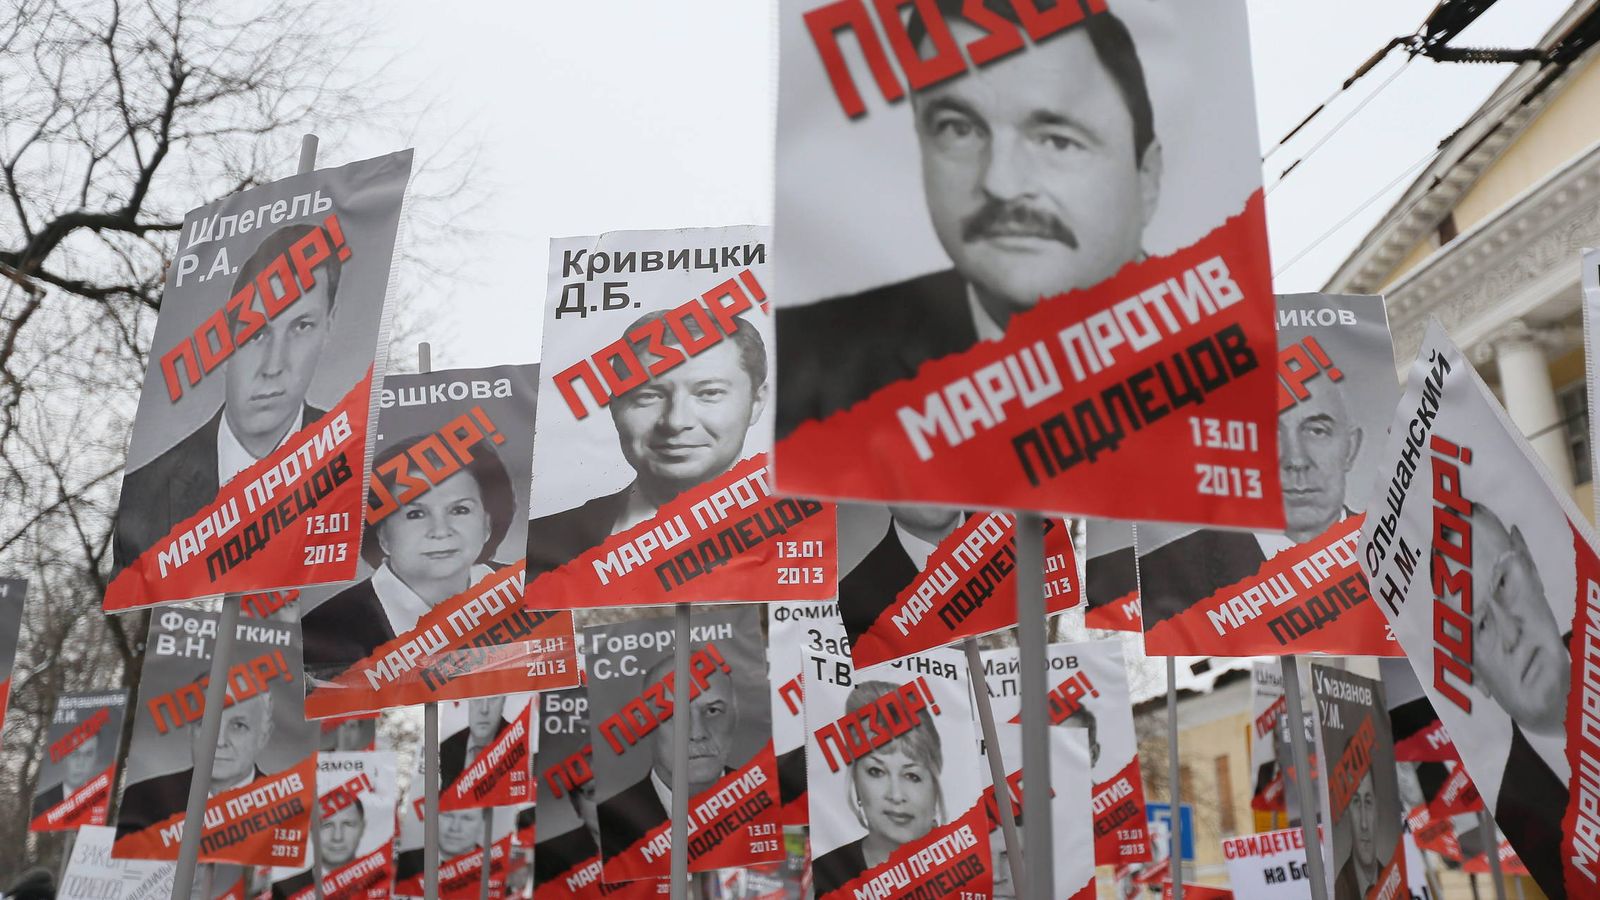 Foto: Miembros de la oposición rusa enarbolan carteles con individuos sancionados por la Ley Magnitsky, en Moscú, en enero de 2013. (EFE)